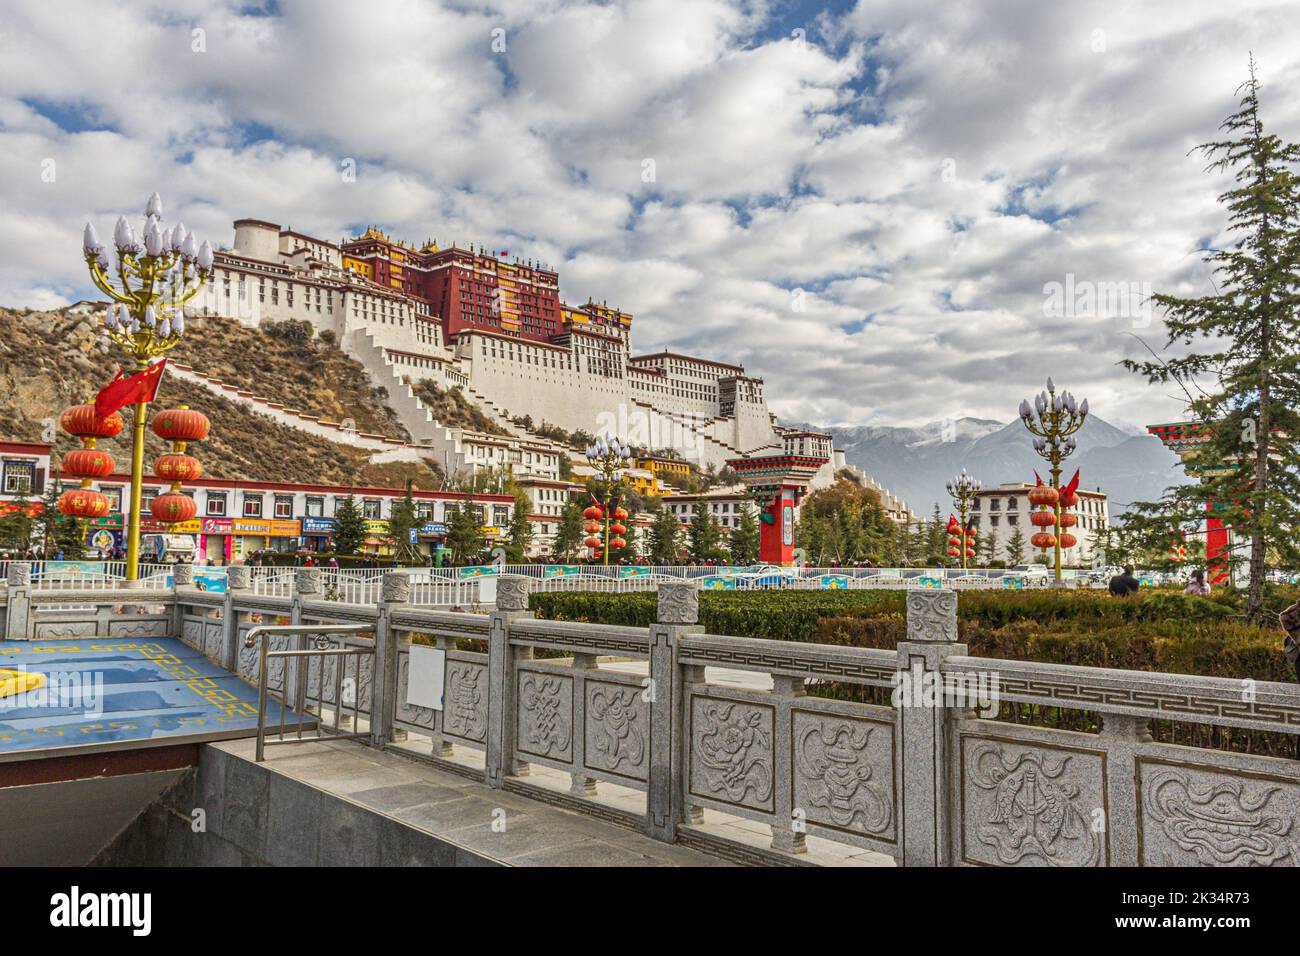 Der Potala-Palast in Lhasa, Tibet, war die Hauptresidenz des aktuellen Dalai Lama, bis seine Heiligkeit während des tibetischen Aufstands von 1959 nach Indien floh Stockfoto